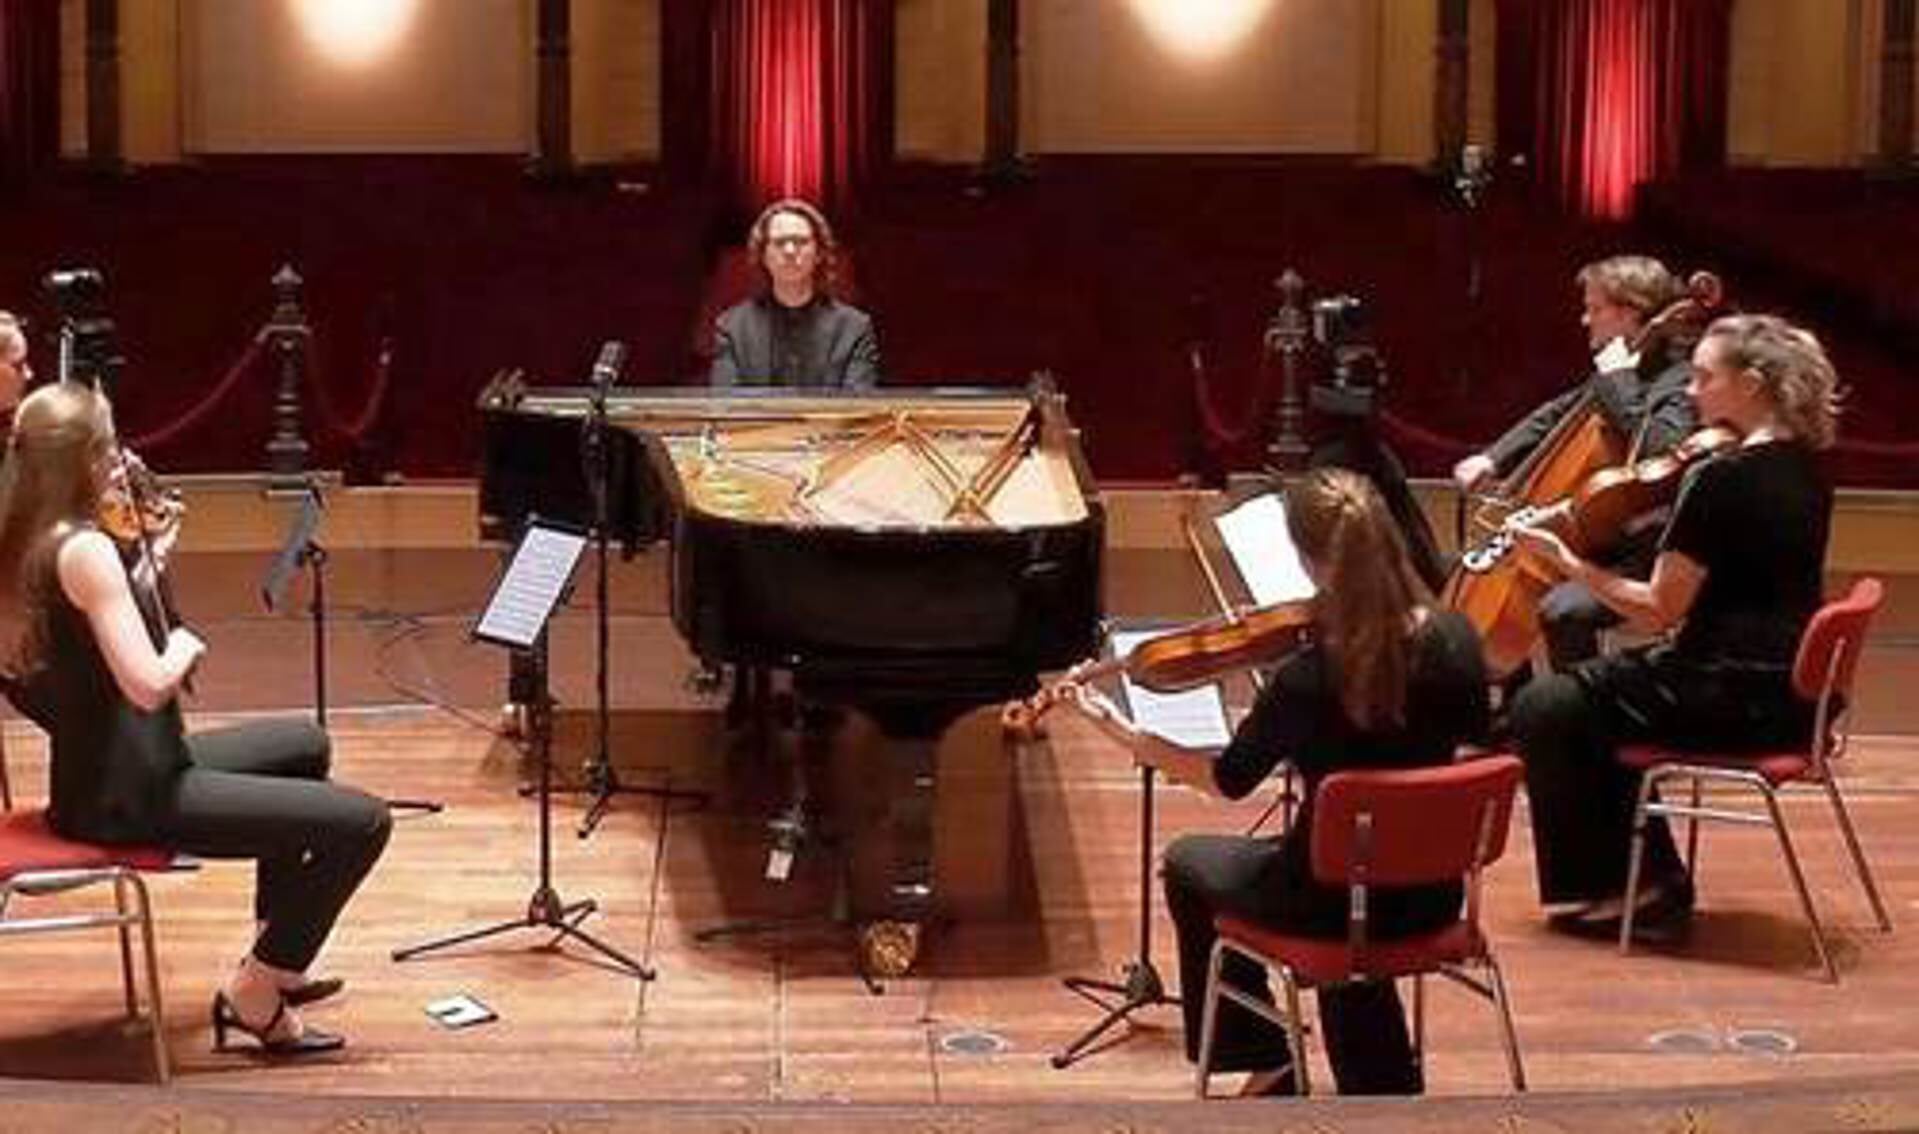 De musici speelden eerder al eens samen in het Koninklijk Concertgebouw in Amsterdam 